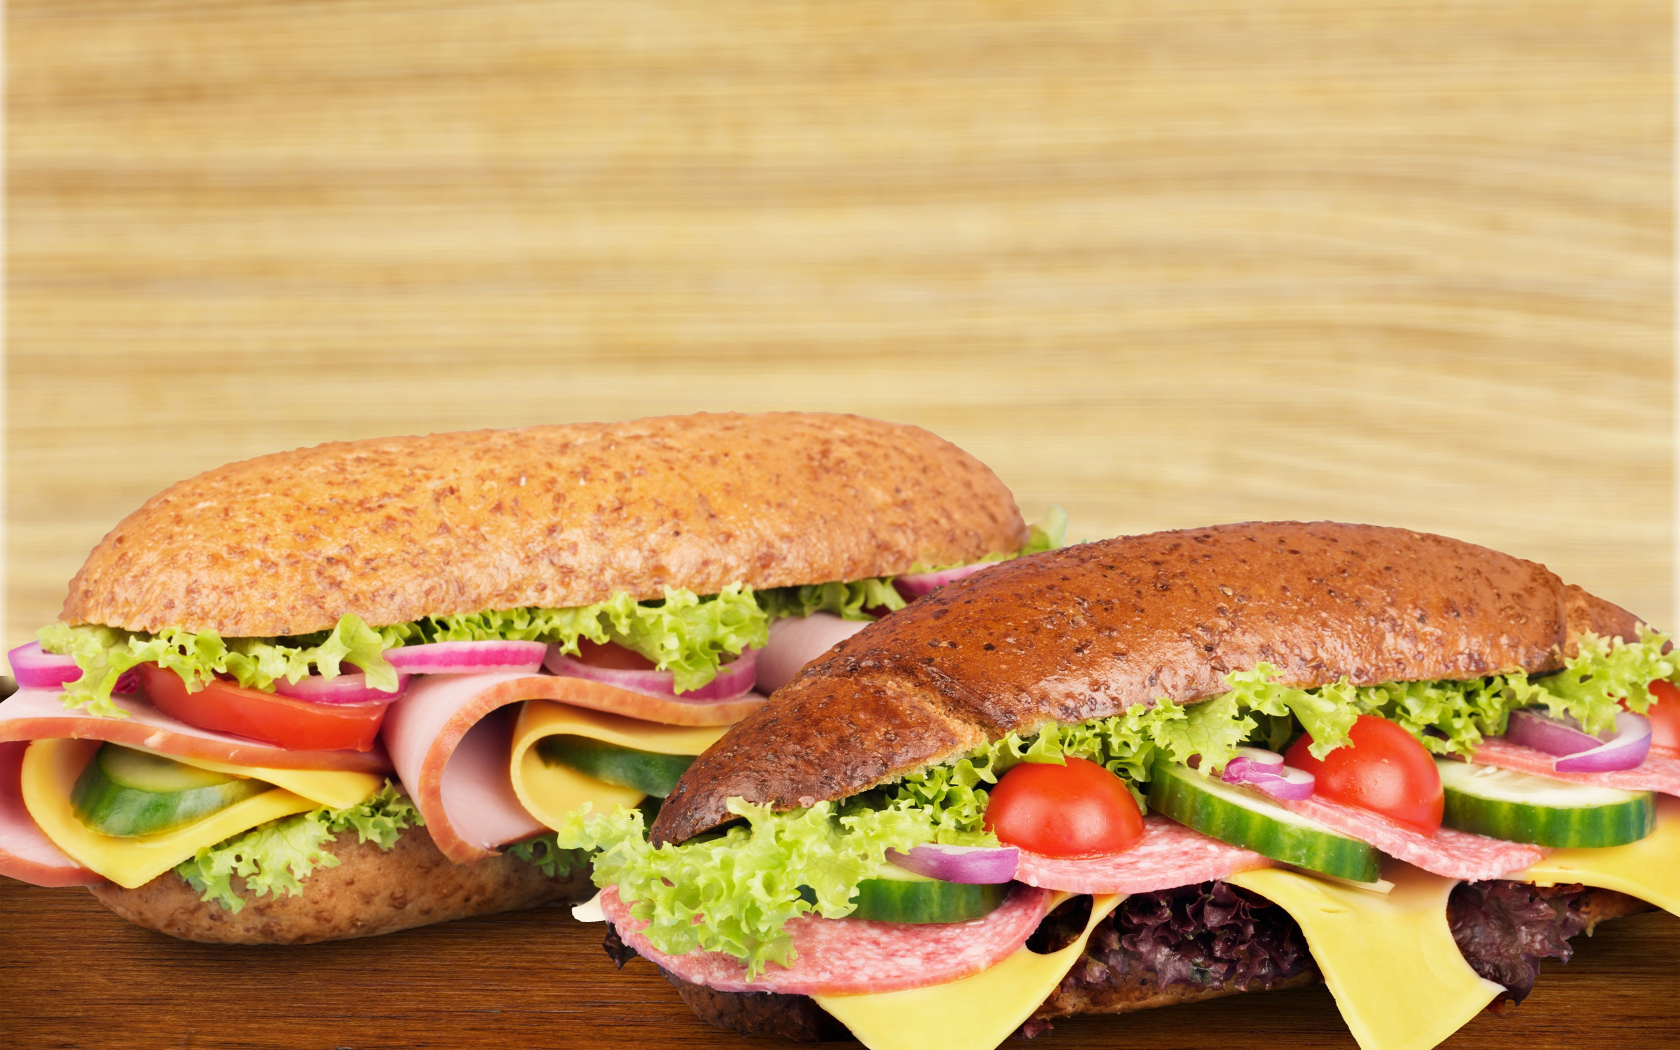 Два вкусных бутерброда с овощами и колбасой на столе 